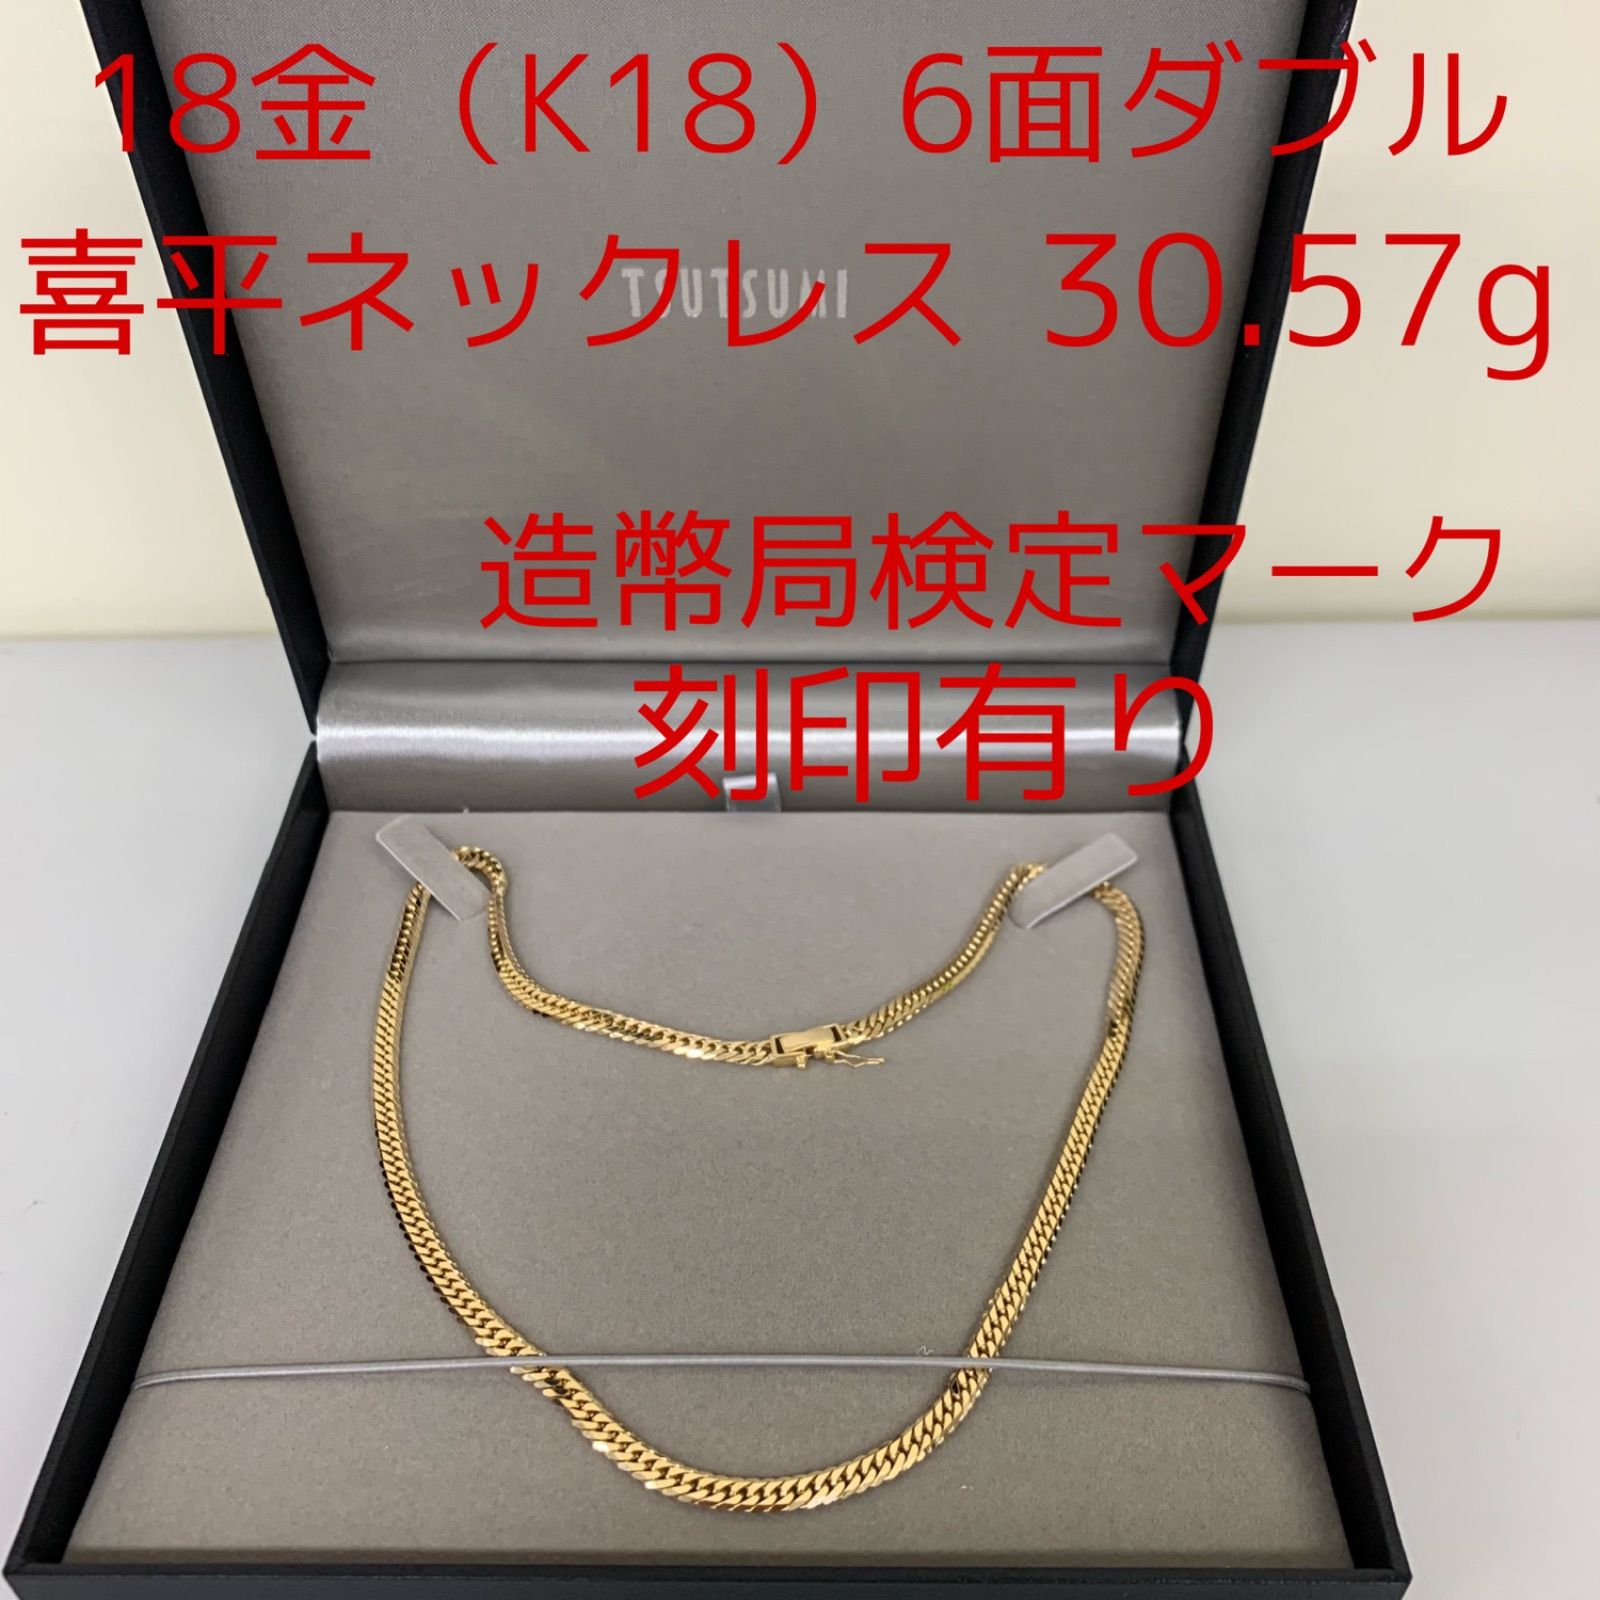 K18（18金）造幣局検定刻印有り 喜平ネックレス6面ダブル 30.57g ...